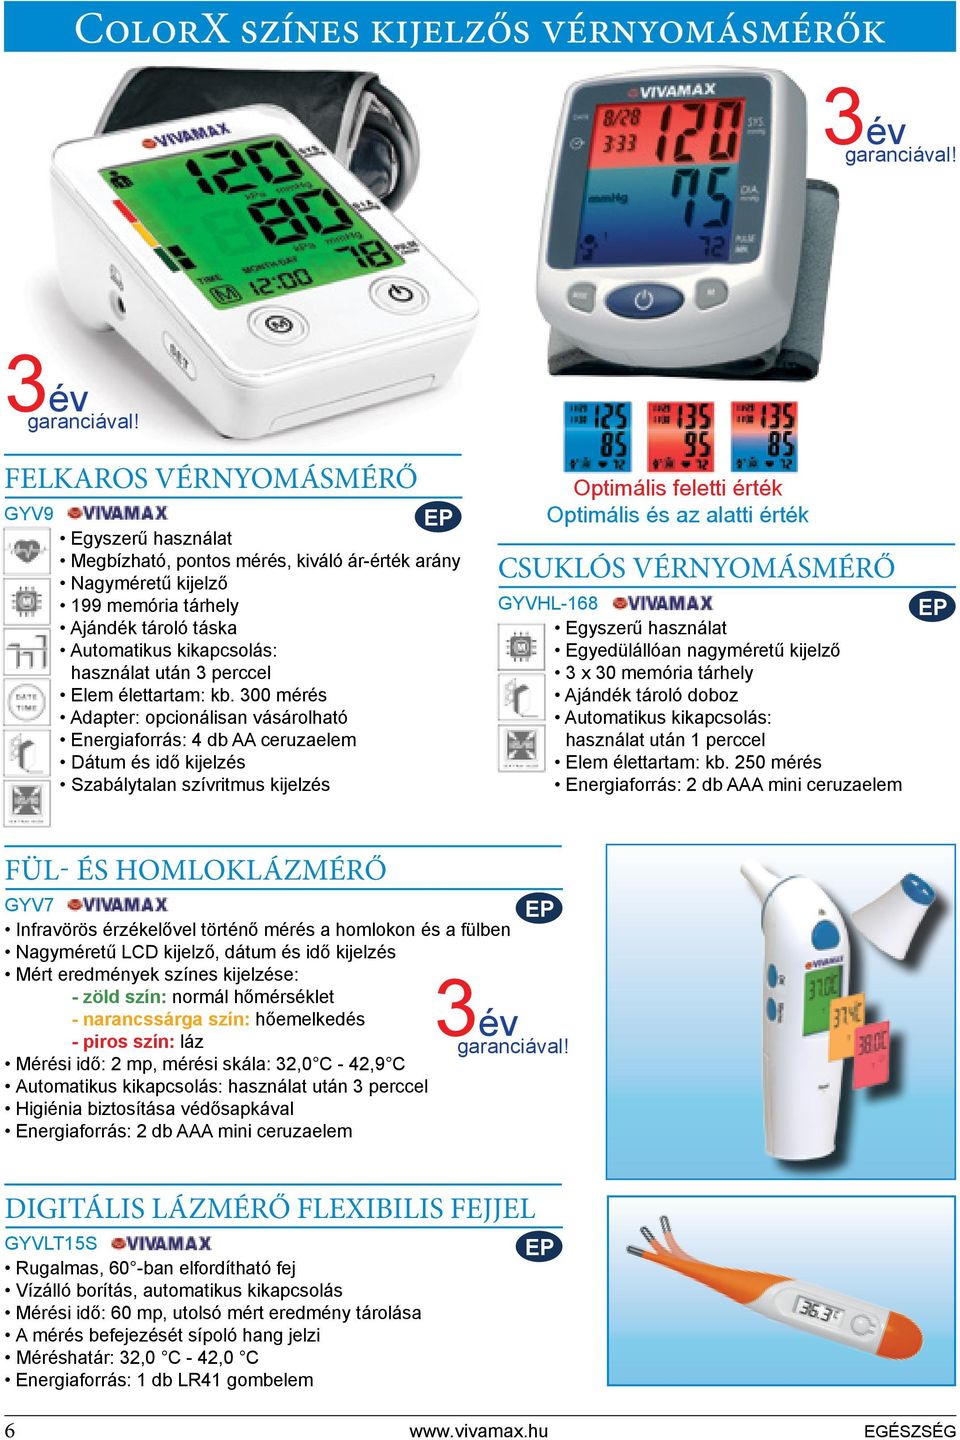 felkaros vérnyomásmérő GYV9 Egyszerű használat Megbízható, pontos mérés, kiváló ár-érték arány Nagyméretű kijelző 199 memória tárhely Ajándék tároló táska Automatikus kikapcsolás: használat után 3